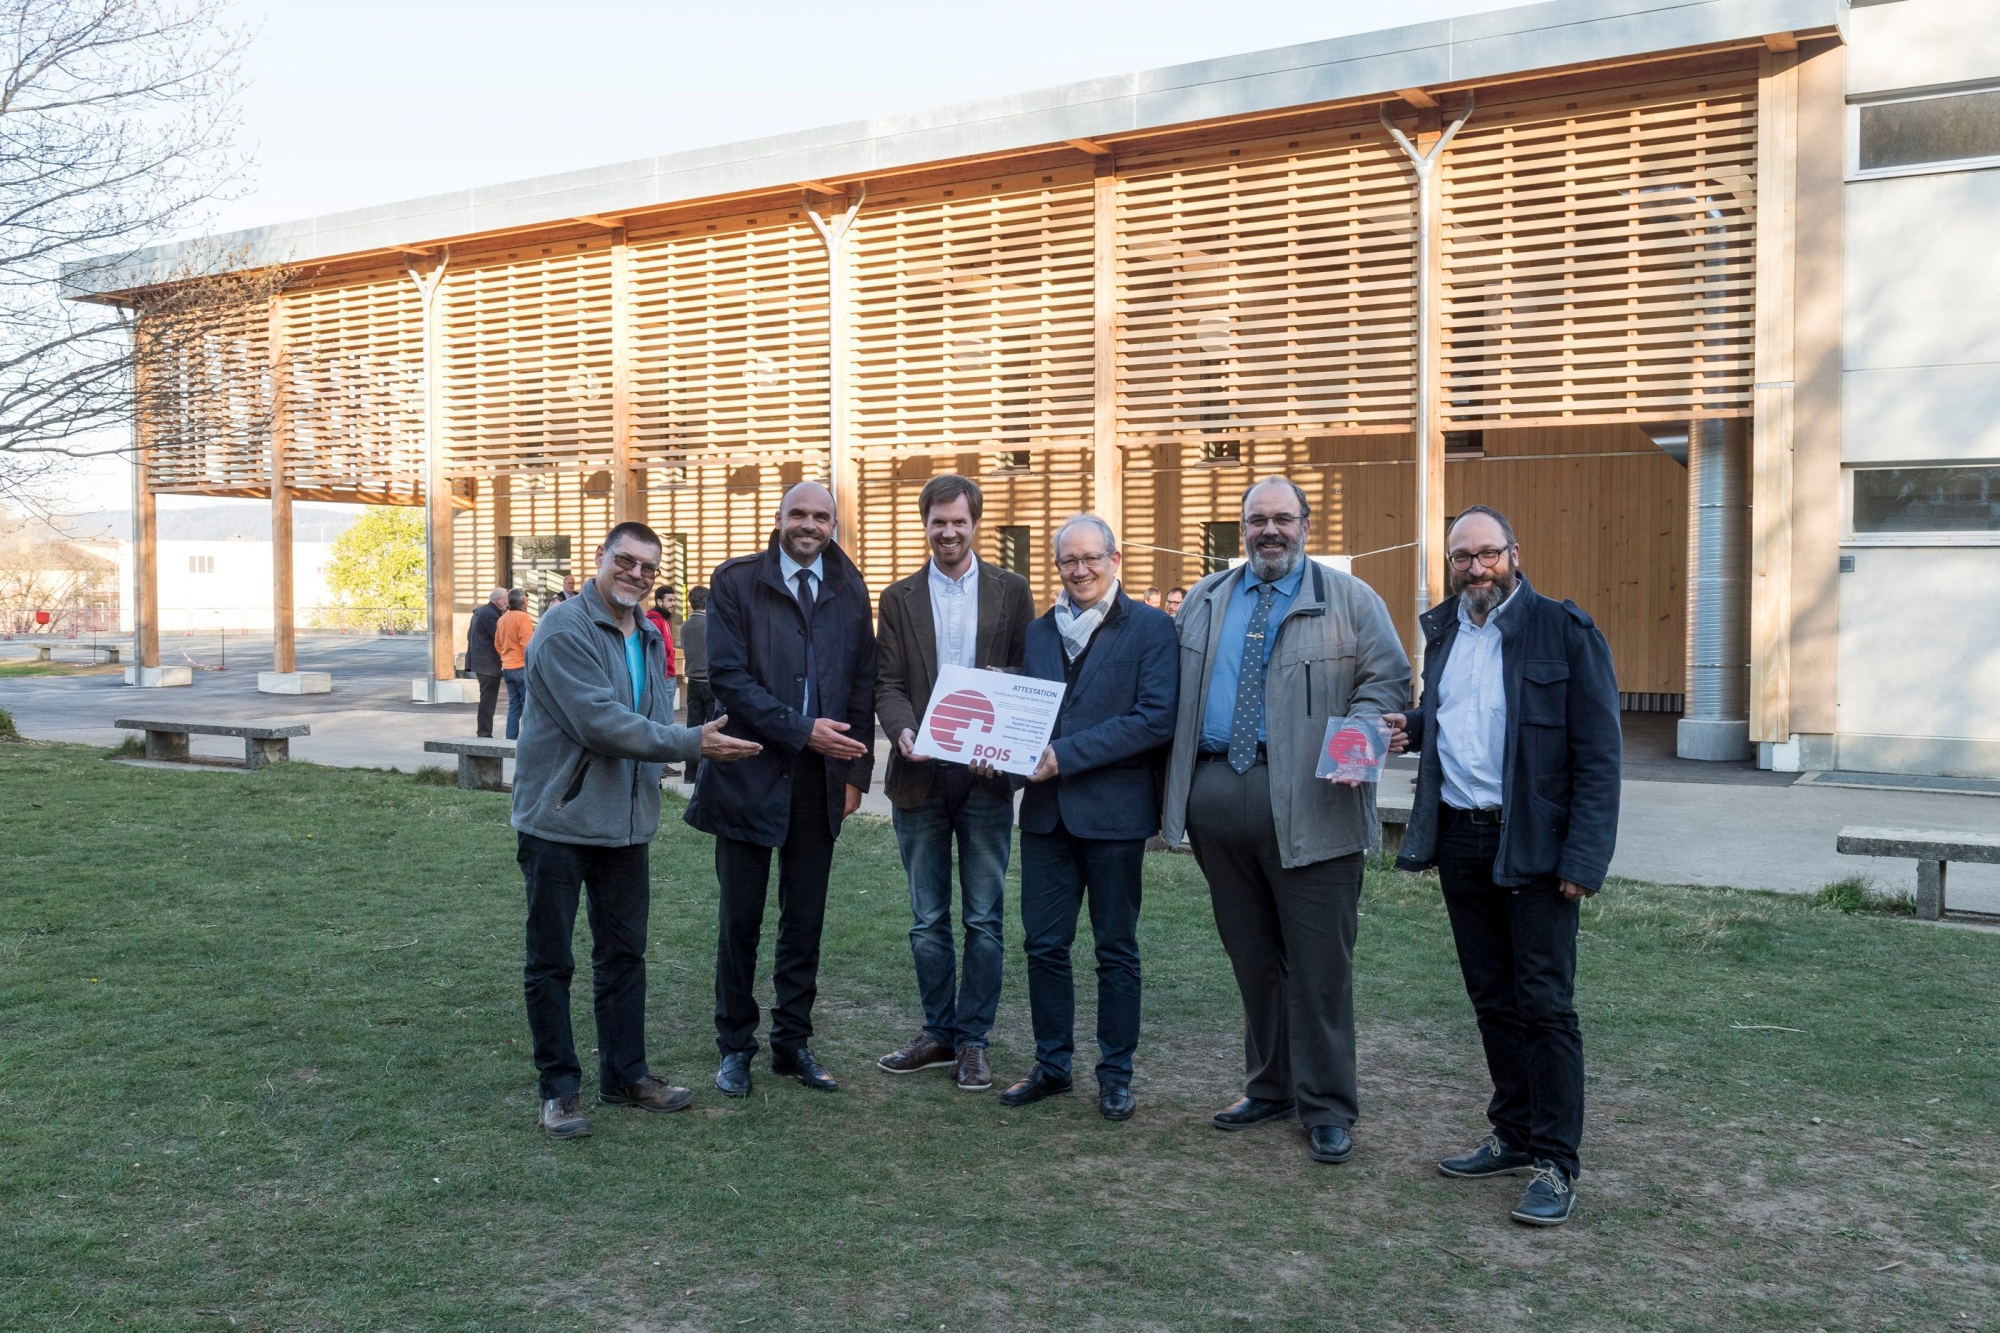 Remise d'un label certificat Bois Suisse a la commune de Val-de-Ruz pour le college du Lynx.

Les Geneveys-sur-Coffrane, le 20.04.2017

Photo : Lucas Vuitel